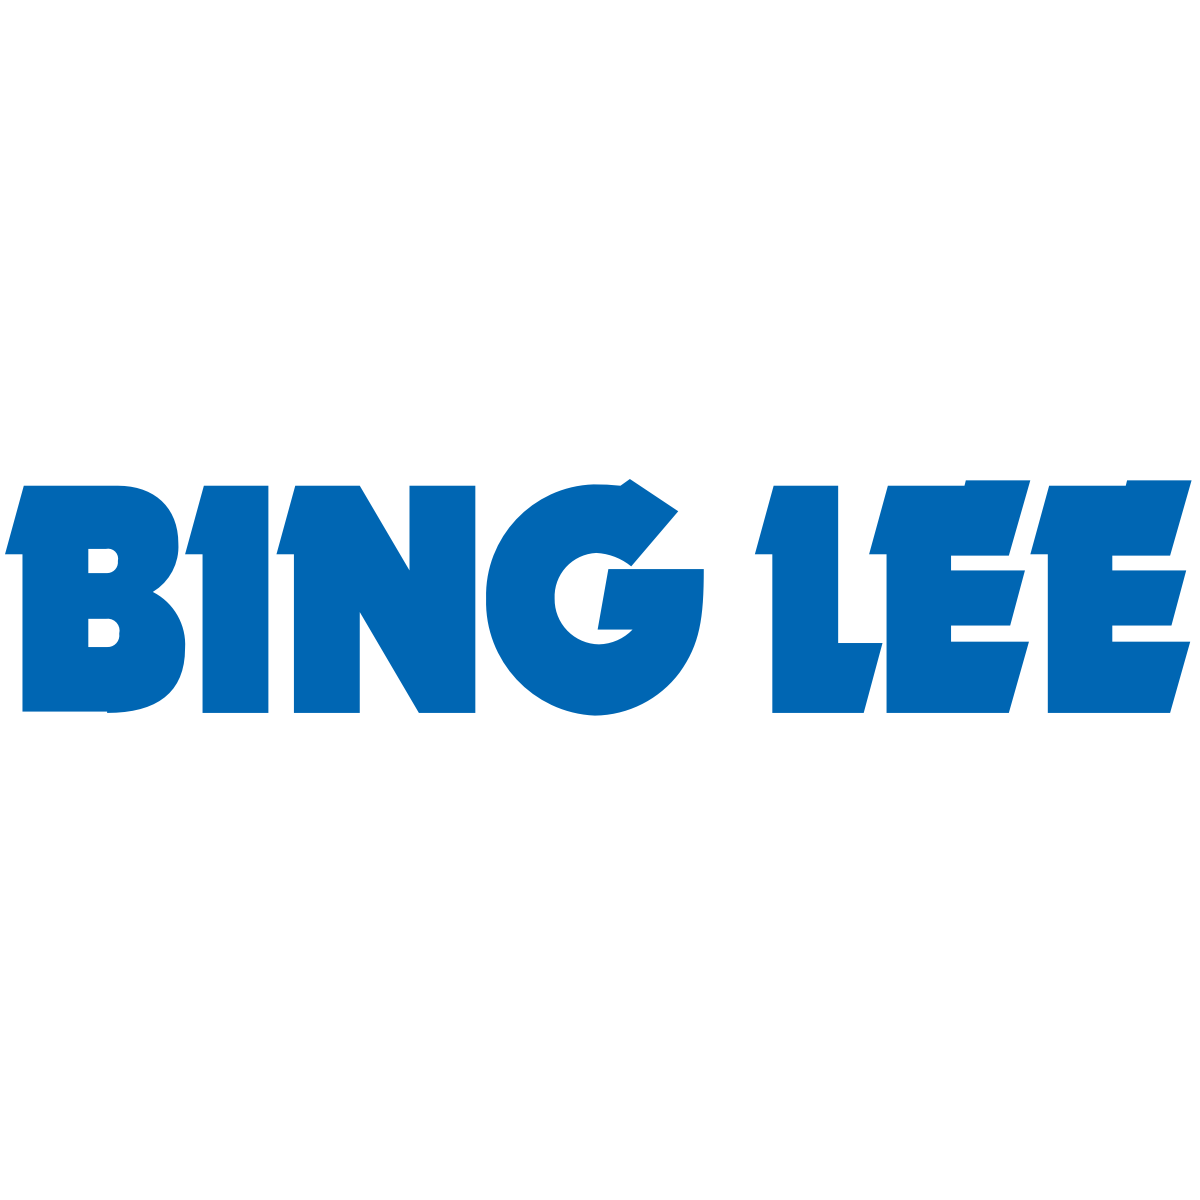 Bing Lee Logo